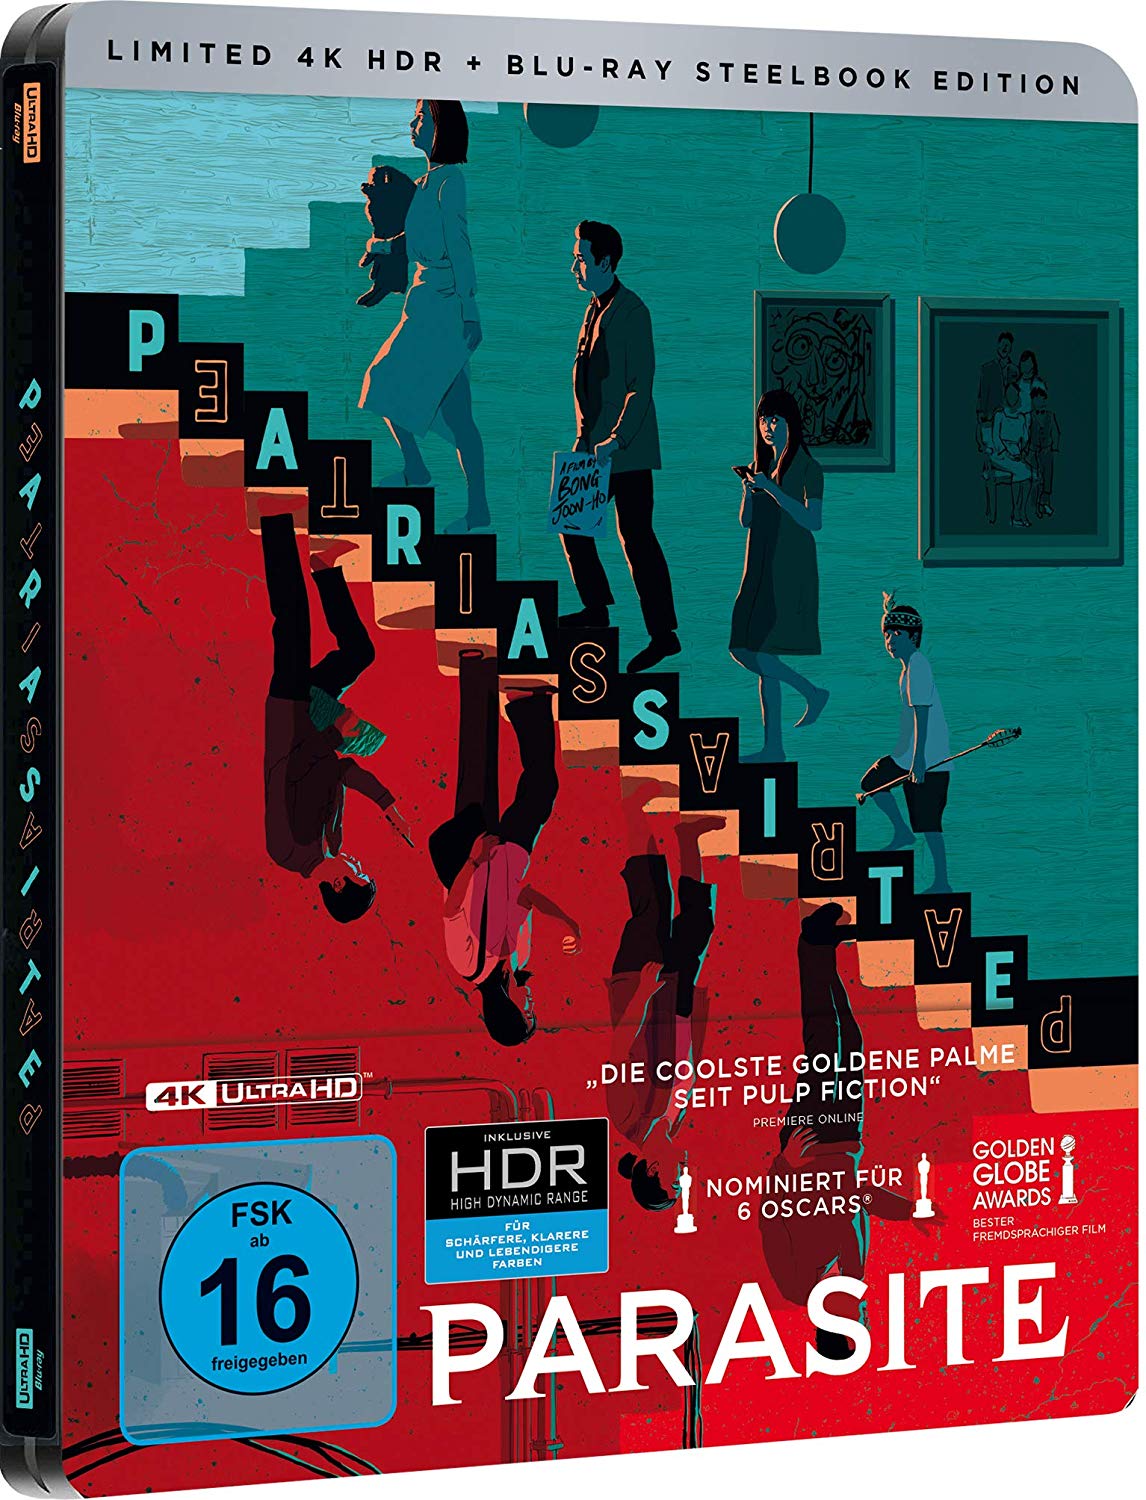 Parasite Cover vom 4K UHD Steelbook mit den Protagonisten des Films (Seitenansicht)